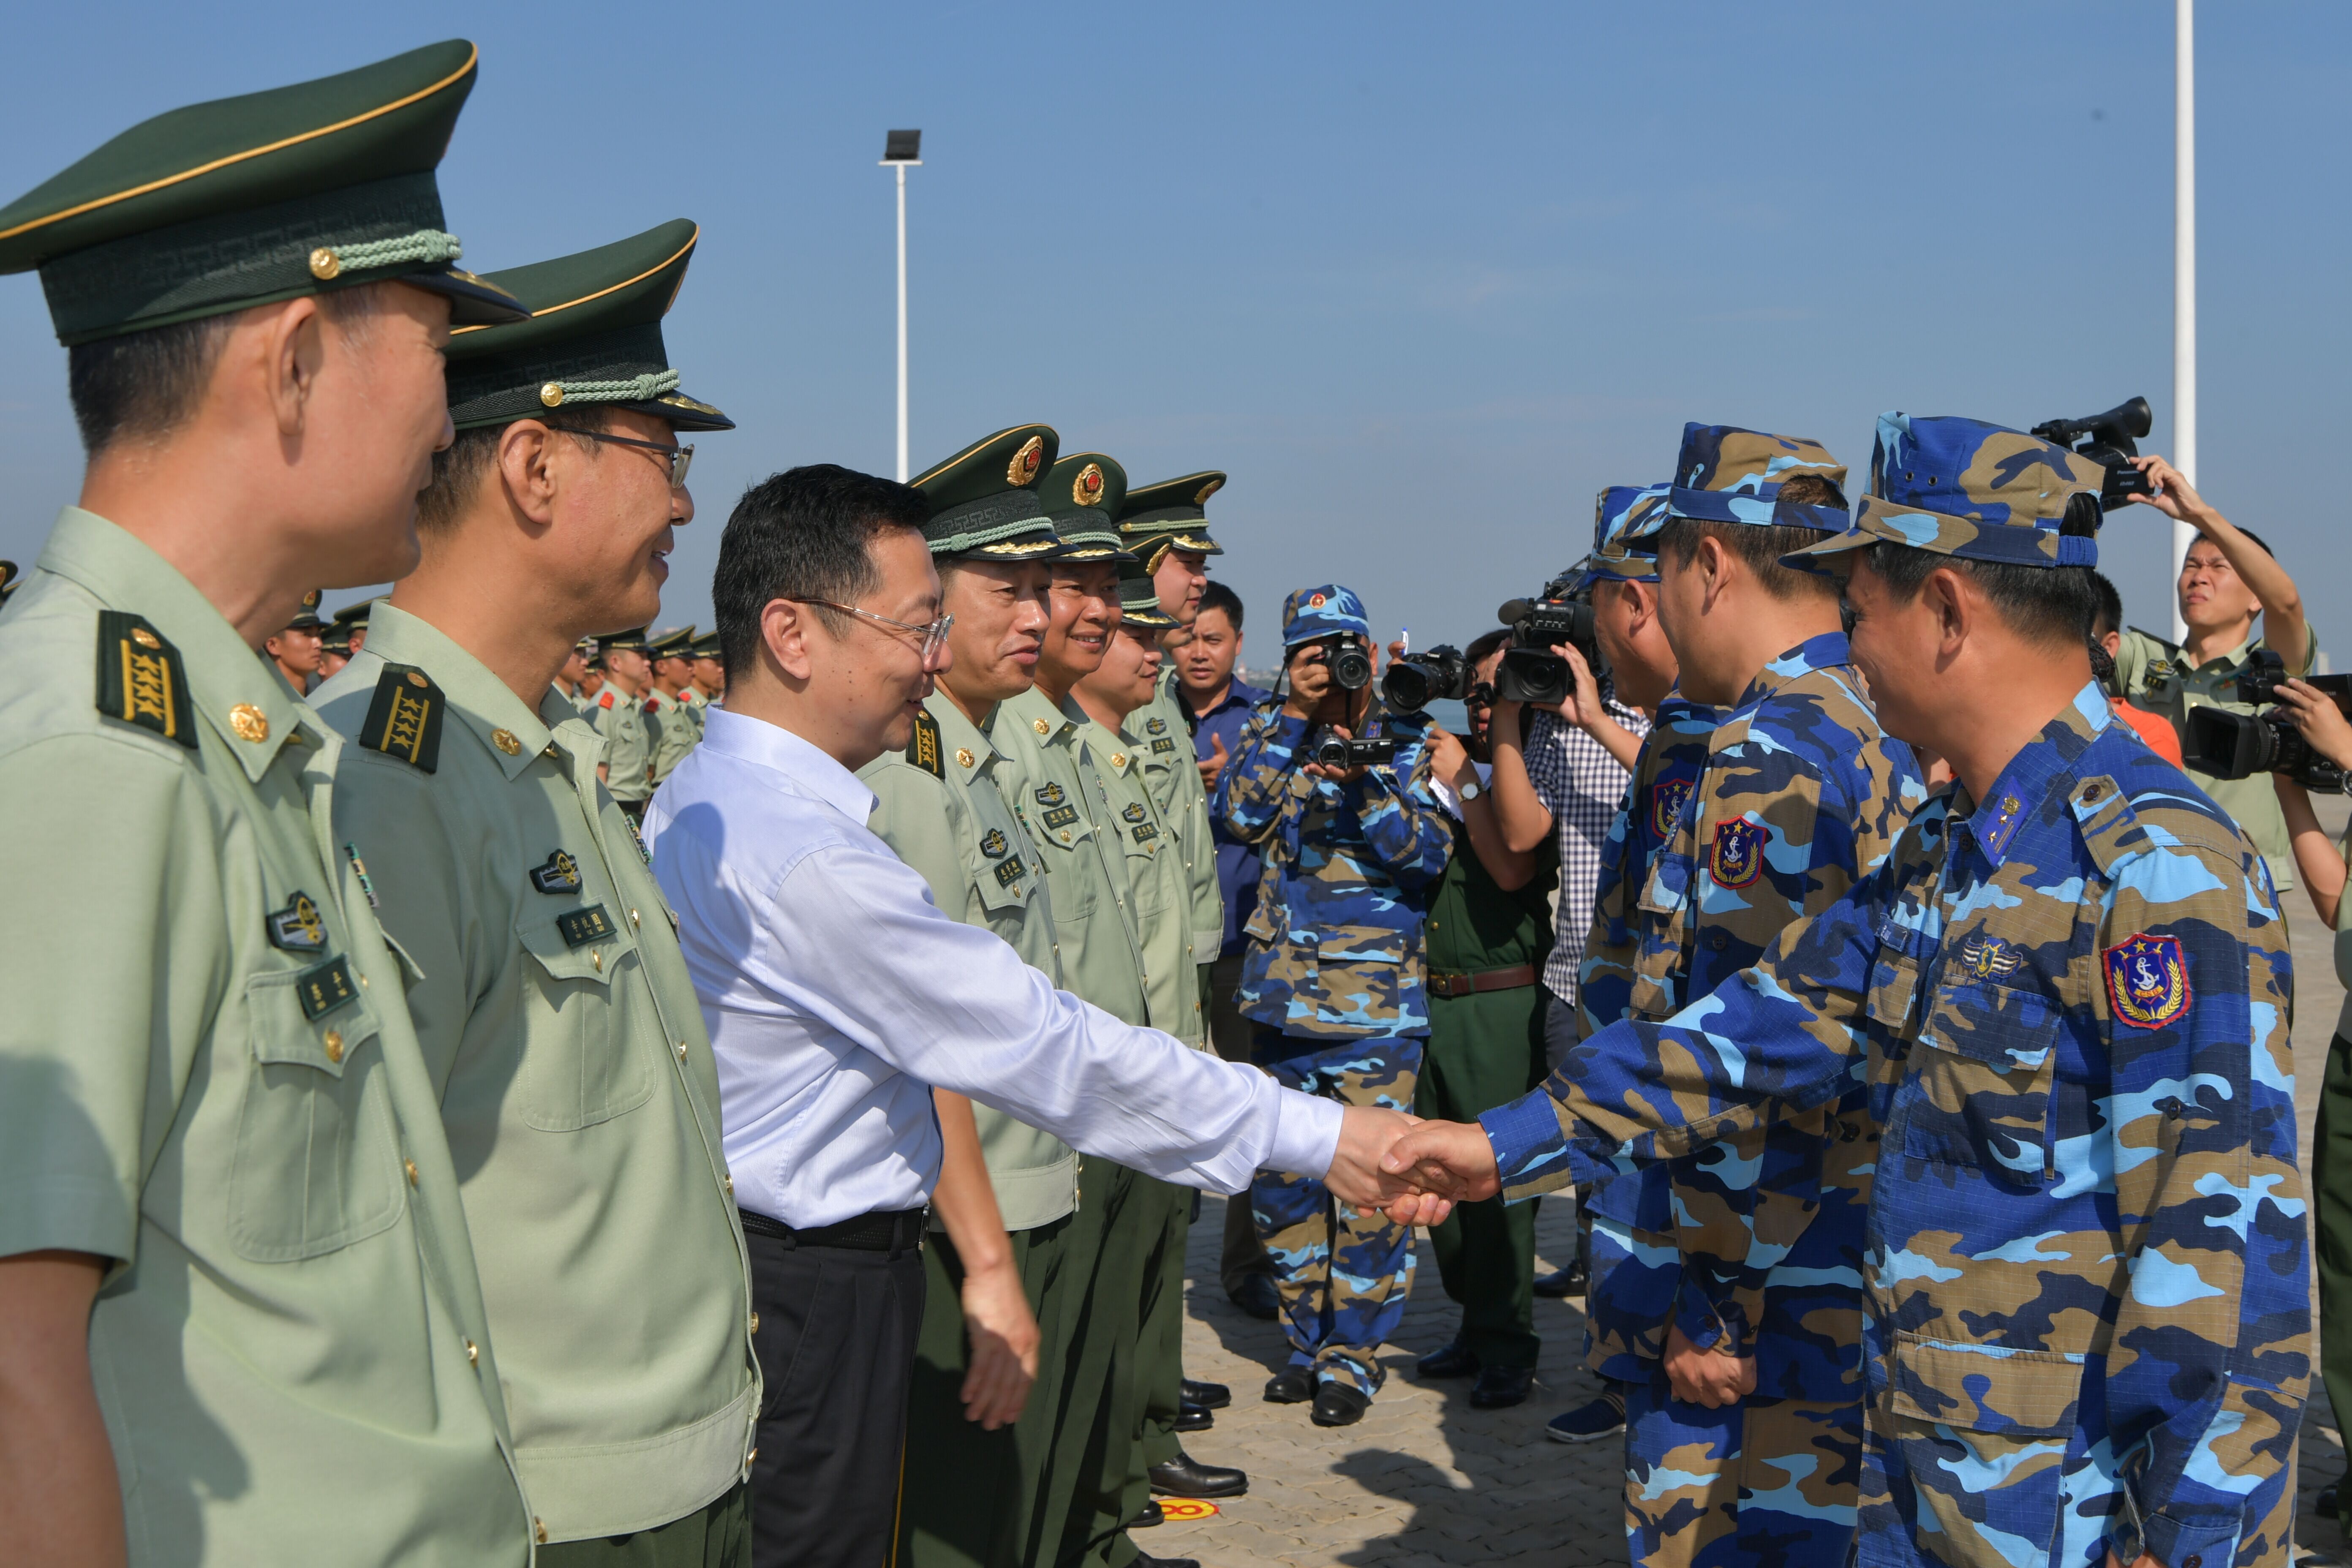 中国海警局,海南海警总队相关领导在码头欢送.